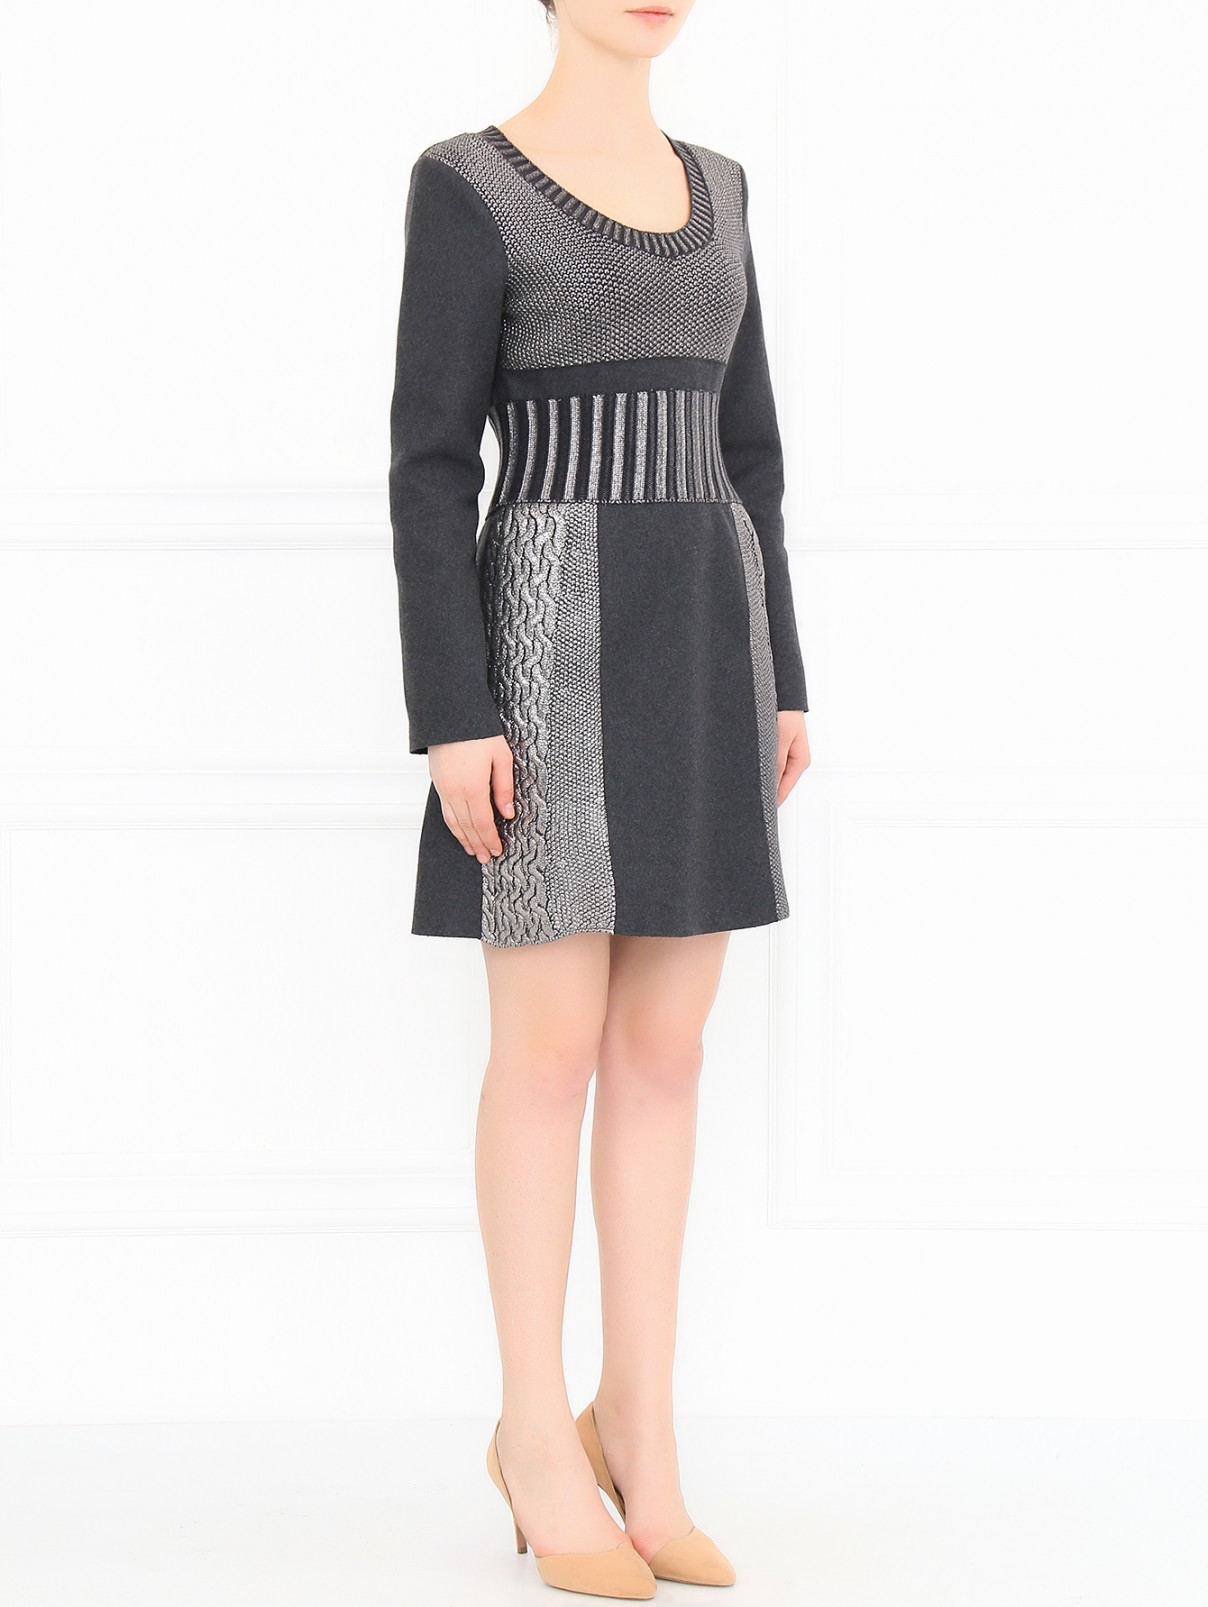 Платье из шерсти с контрастными вставками Alberta Ferretti  –  Модель Общий вид  – Цвет:  Серый